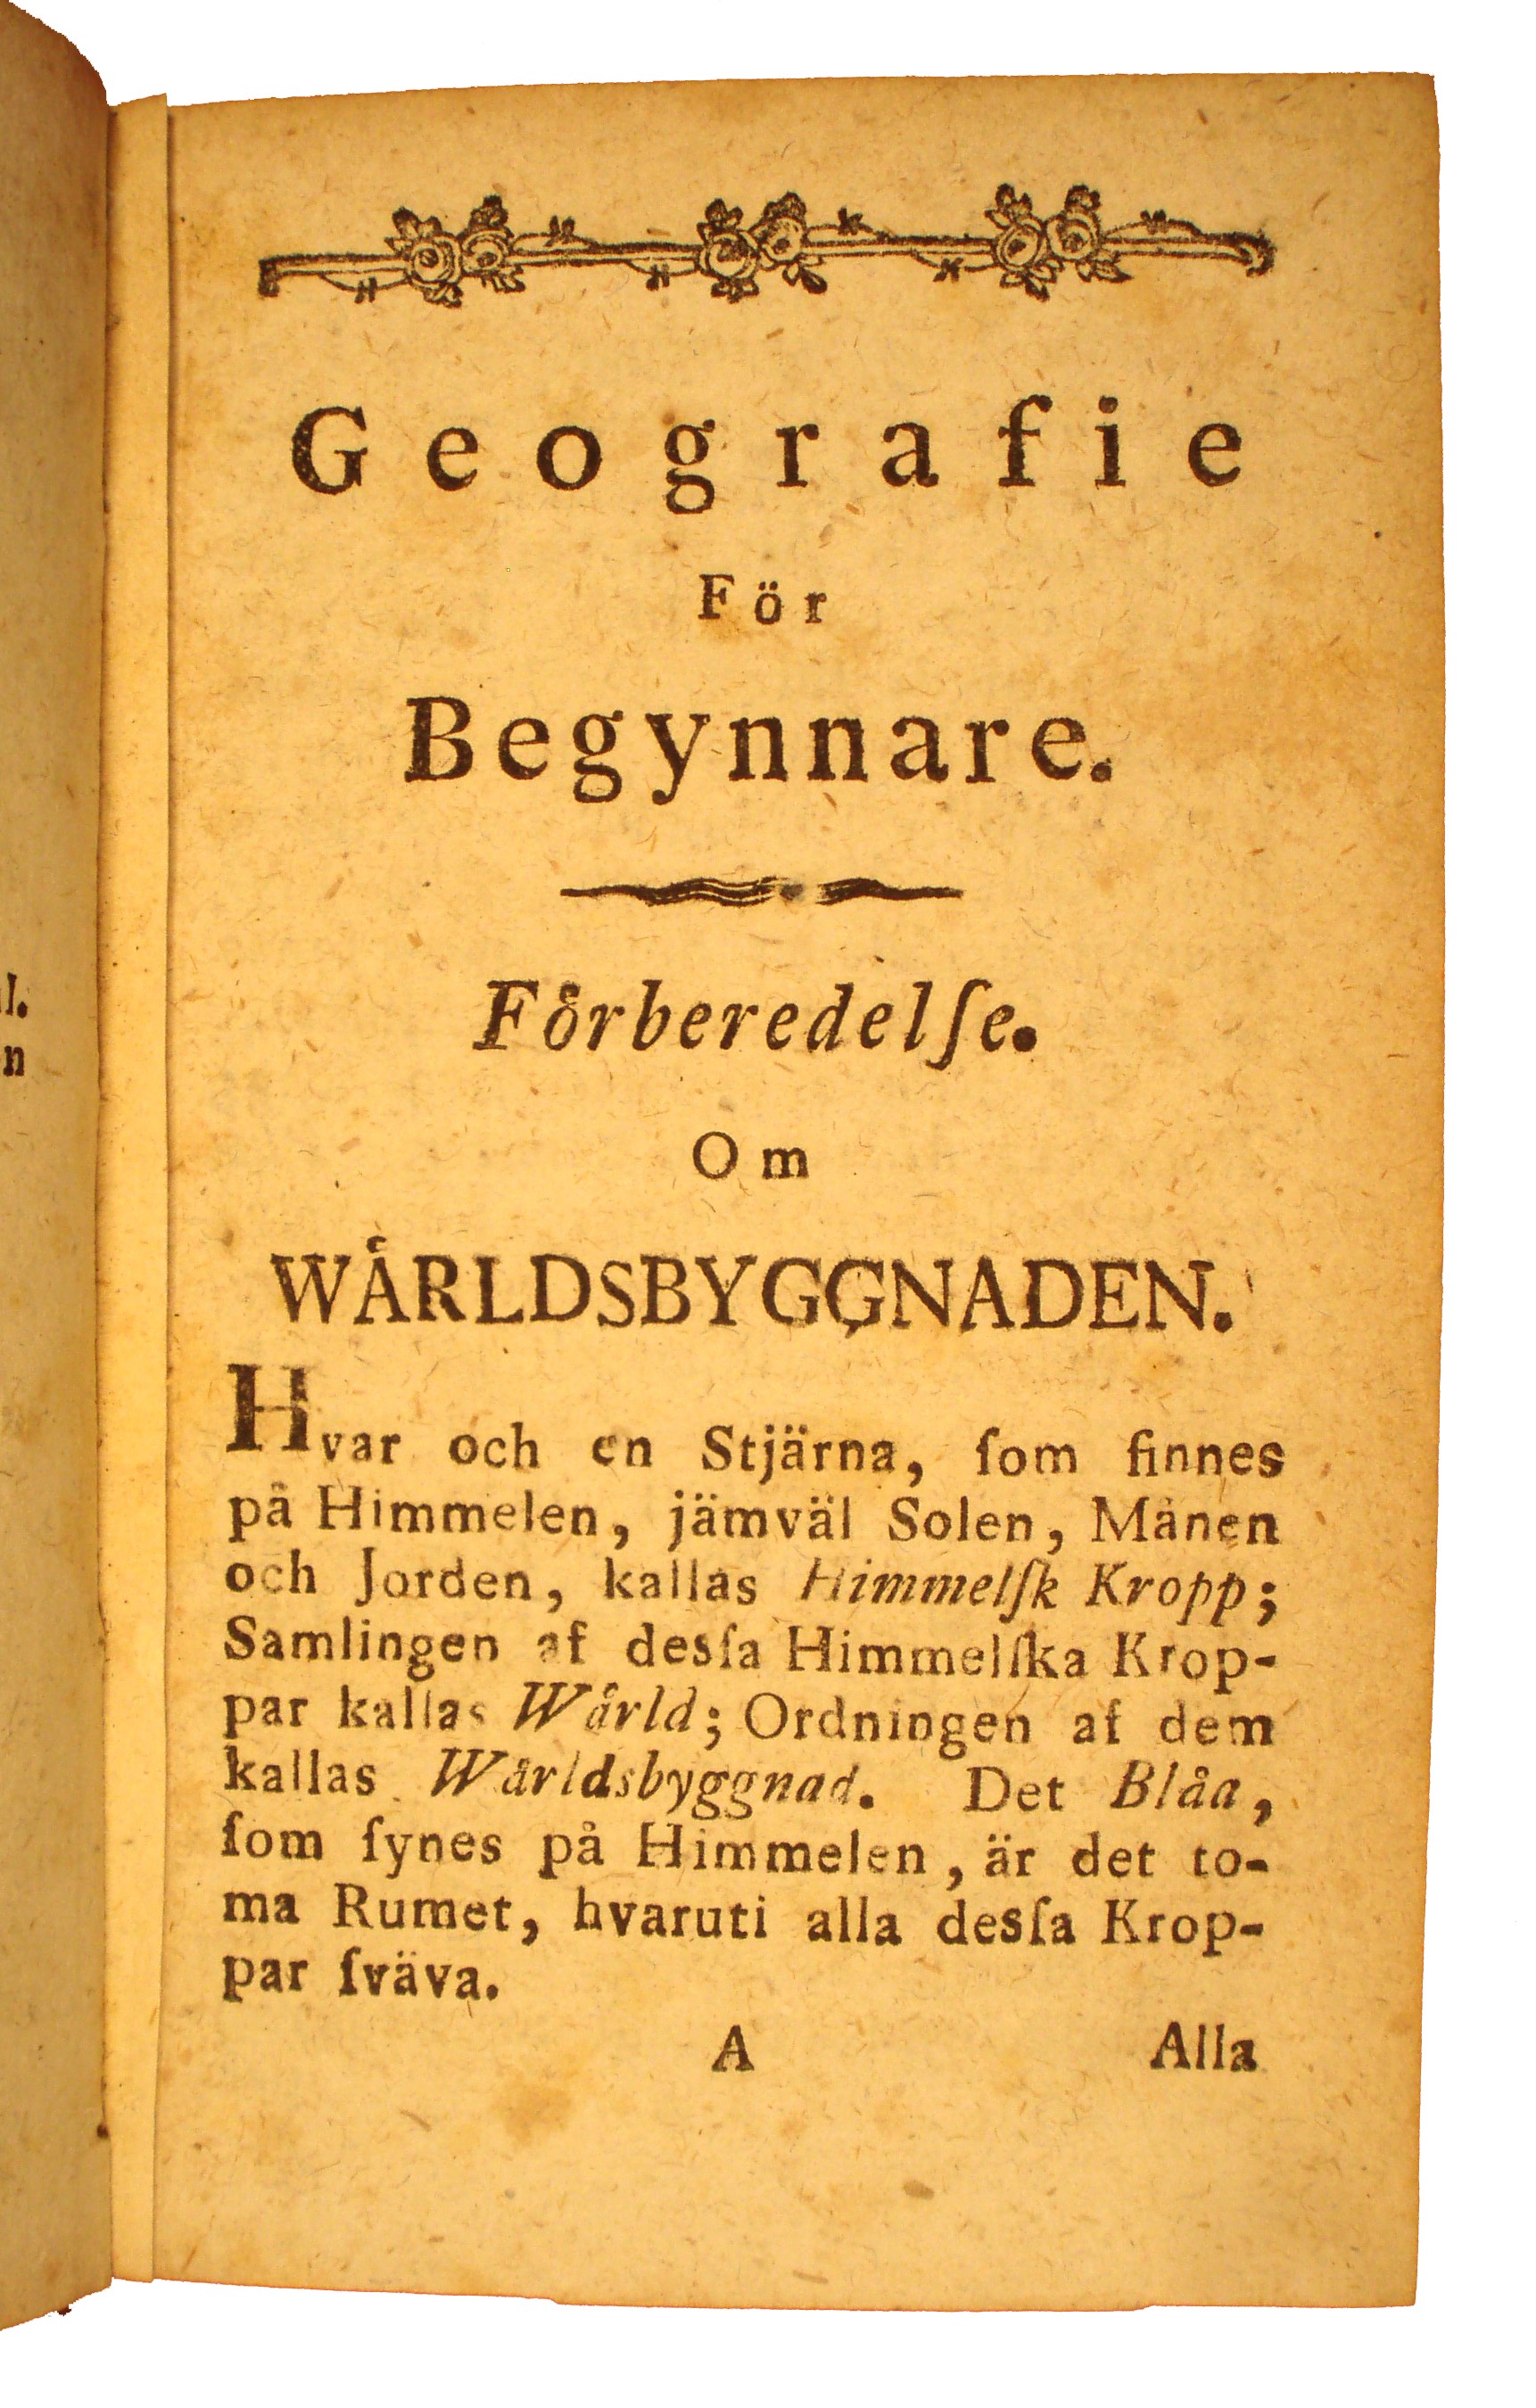 Daniel Djurberg, Geografie for begynnare, 1805